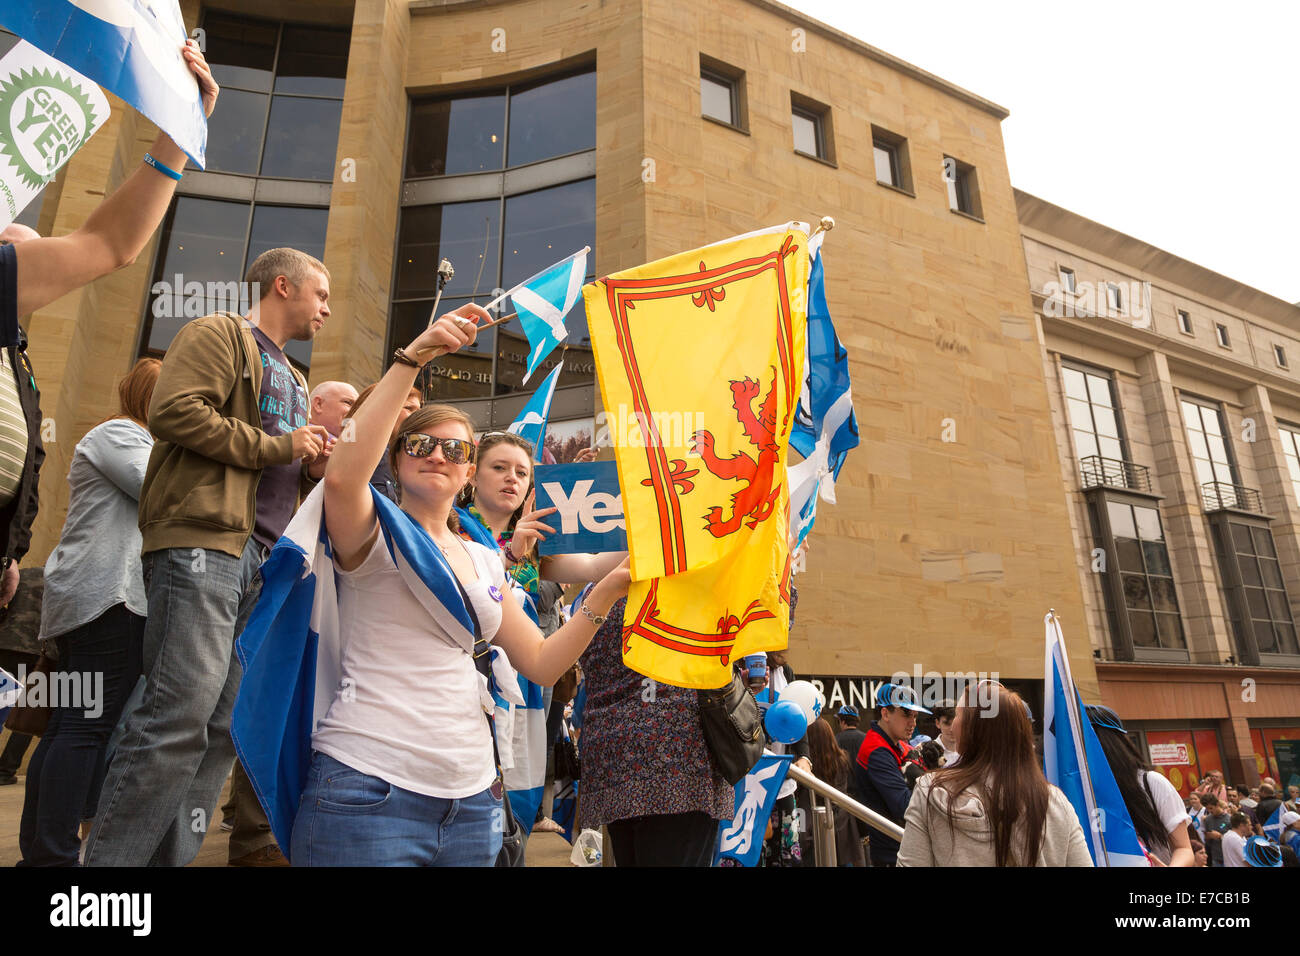 Buchanan Street, Glasgow, Scotland, UK. 13 sept 2014. Une grande foule s'abattre sur le centre-ville de Glasgow pour donner l'appui de la campagne Yes dans les prochains référendum sur l'indépendance de l'Écosse. Crédit : Paul Stewart/Alamy Live News Banque D'Images